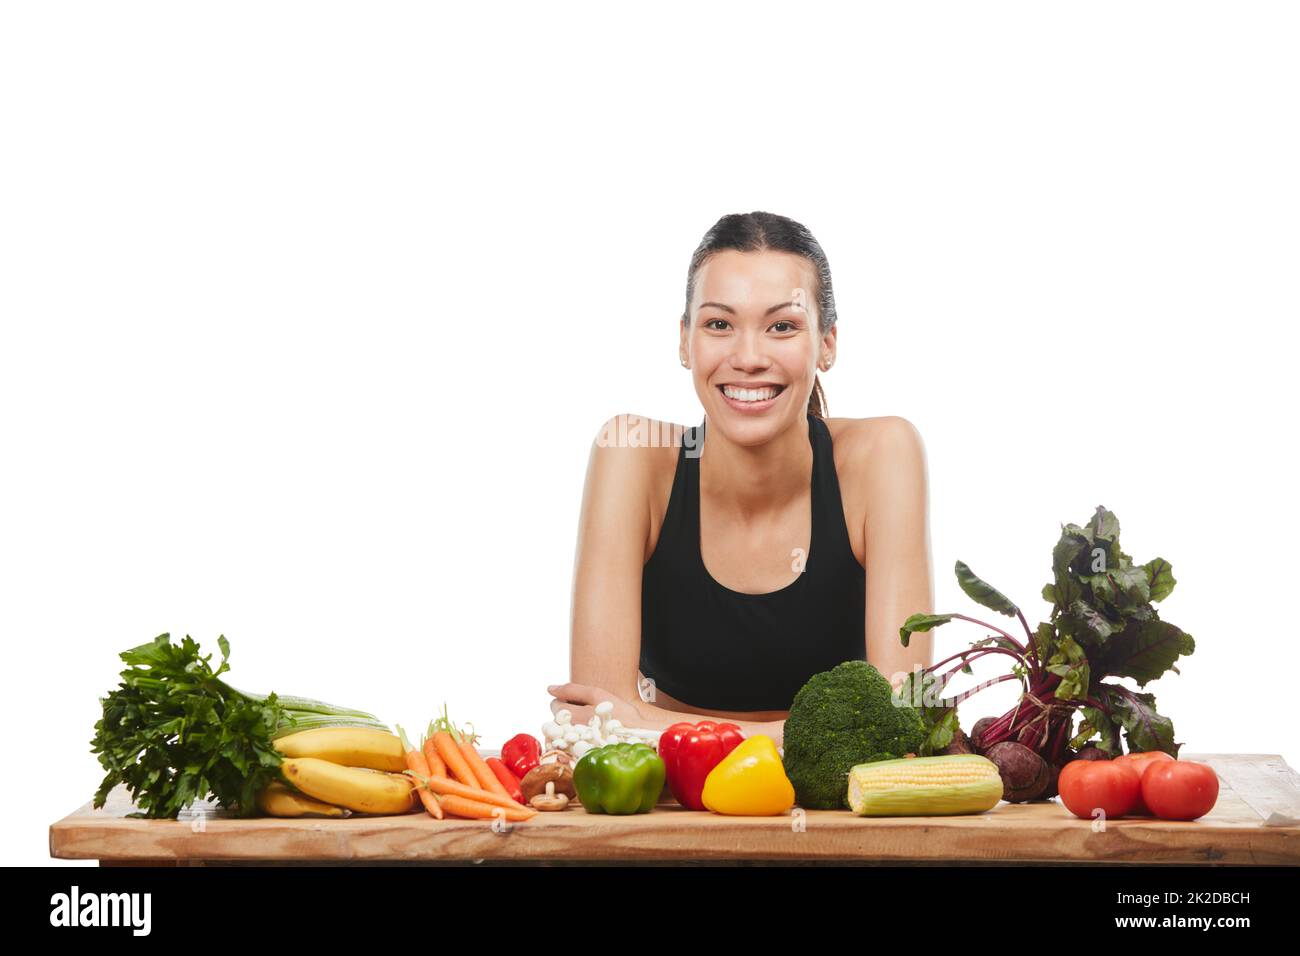 C'est aussi frais qu'il l'obtient. Studio portrait d'une jeune femme attrayante posant avec une table pleine de légumes sur un fond blanc. Banque D'Images